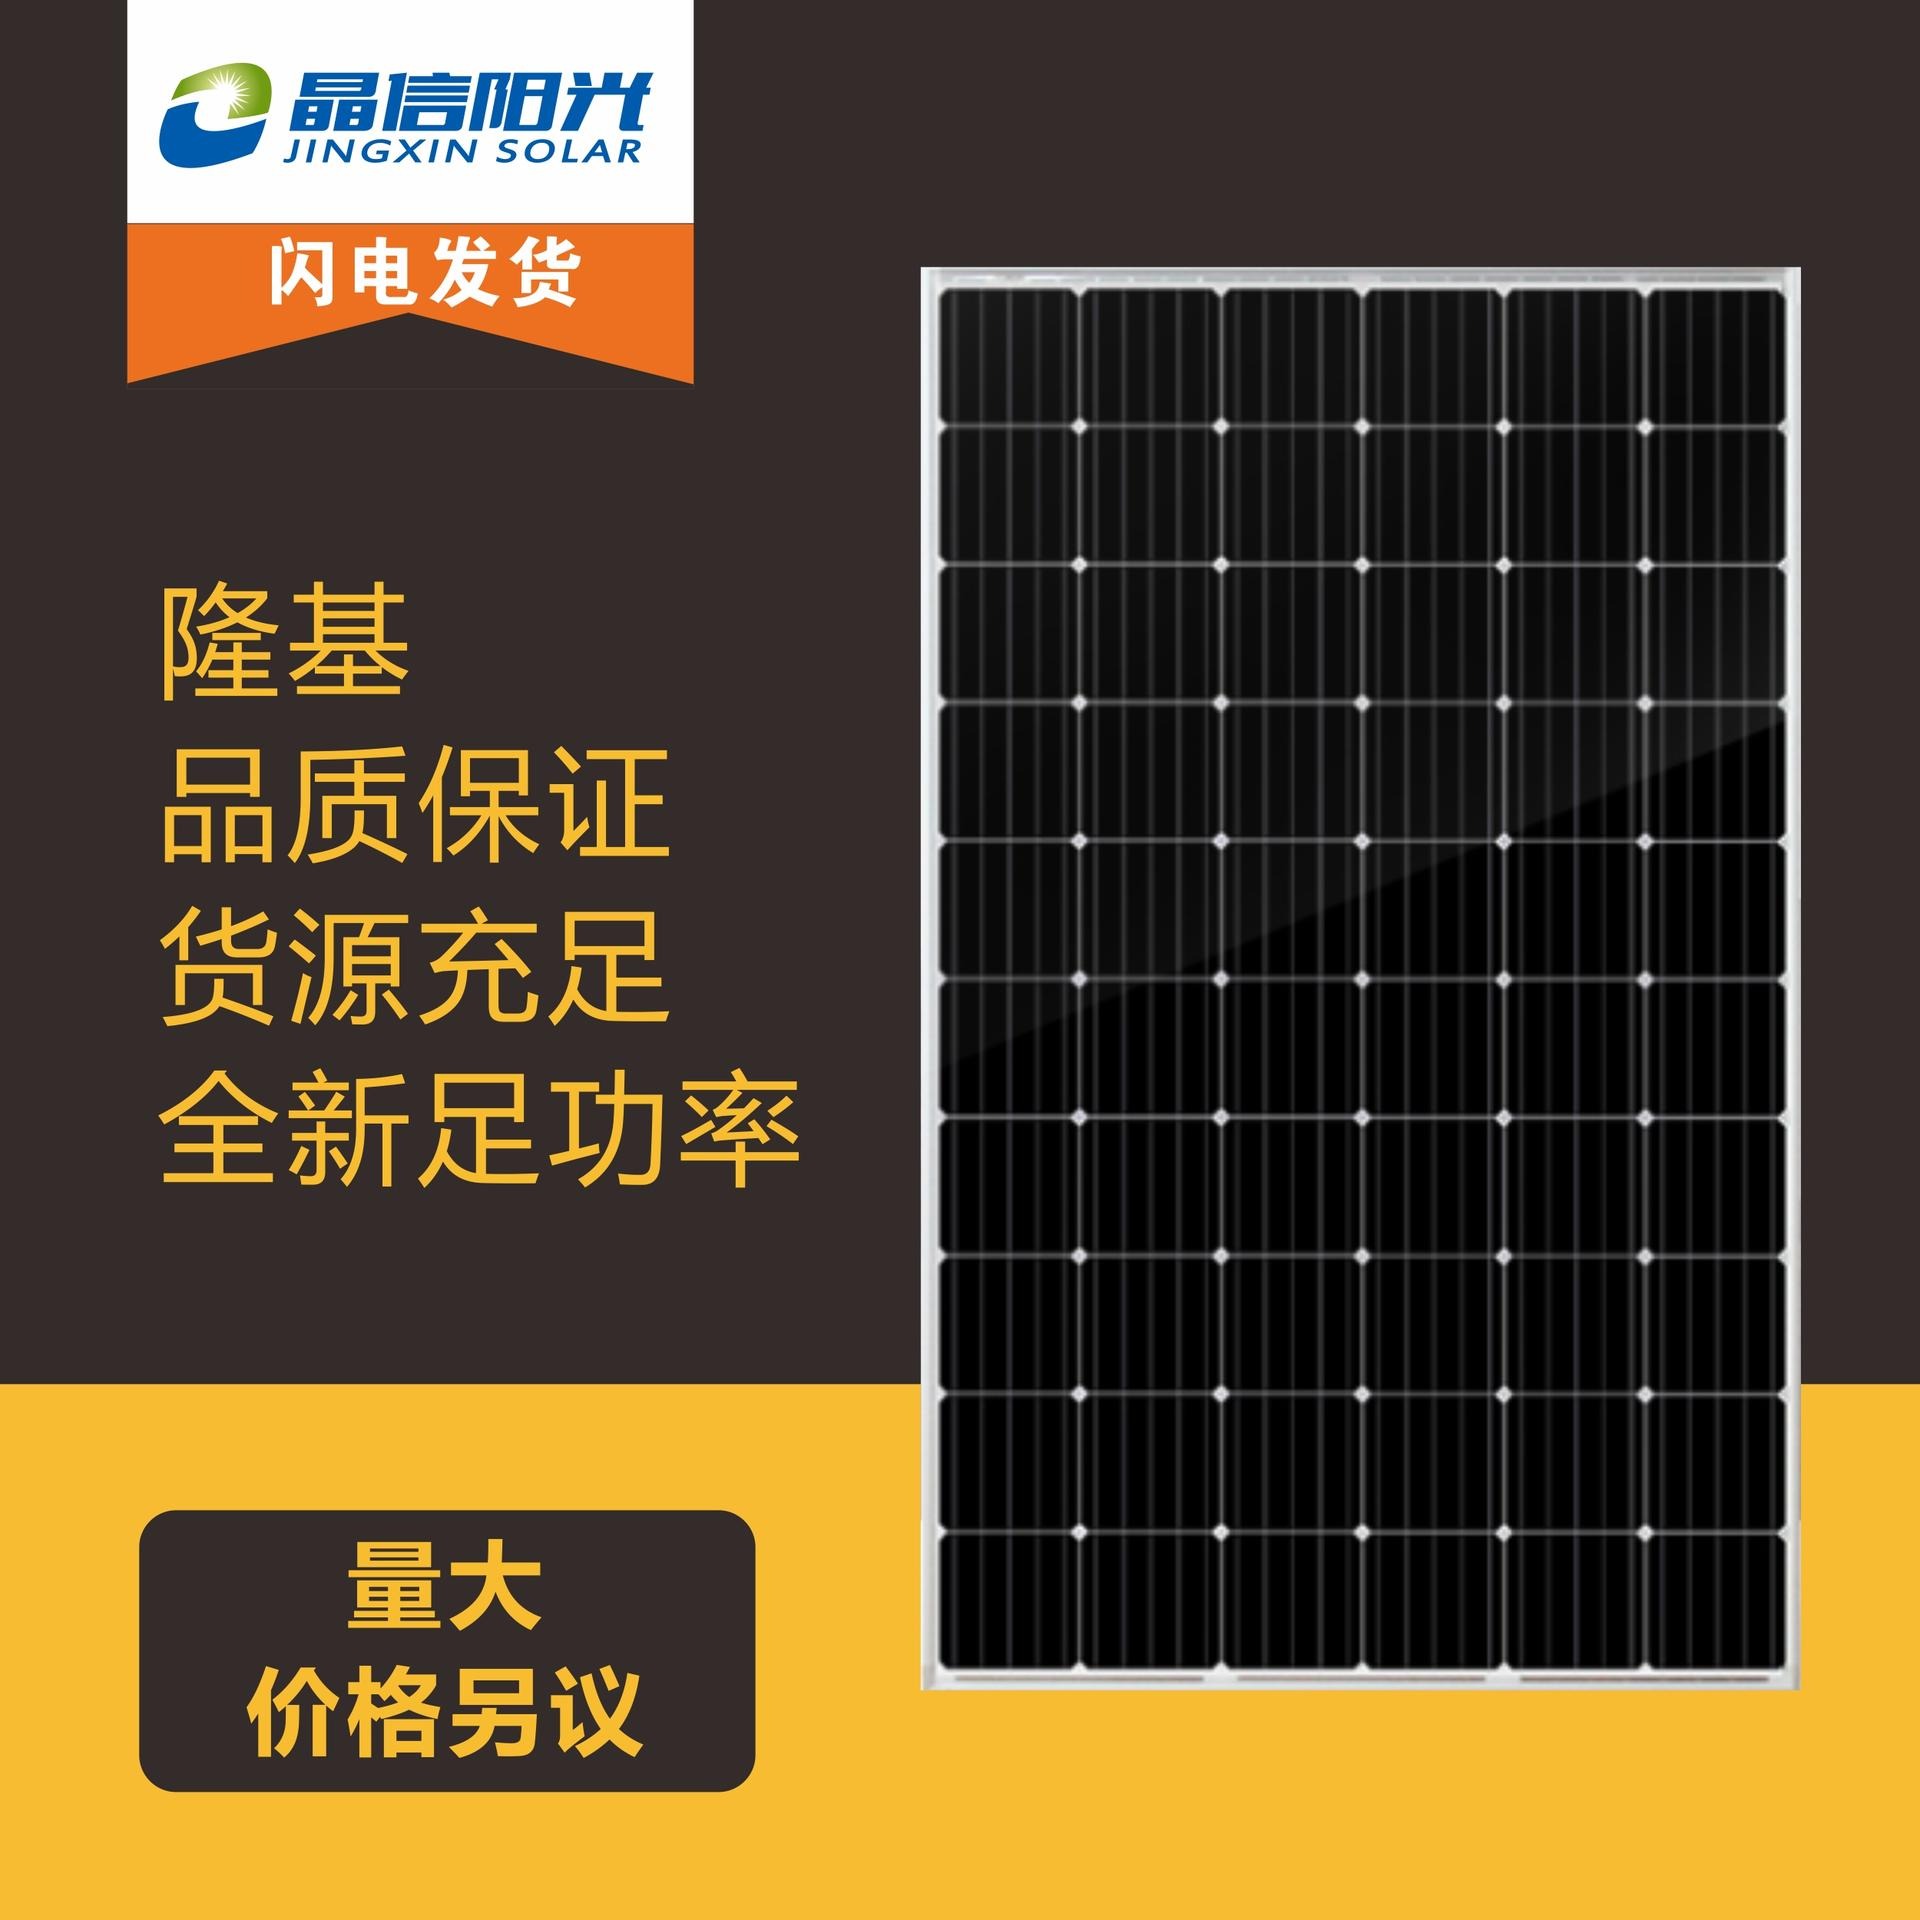 隆基光伏板 单晶硅光伏板 隆基455太阳能发电并网专用 光伏板 山东晶信科技 优质供应商 绿色能源太阳能发电